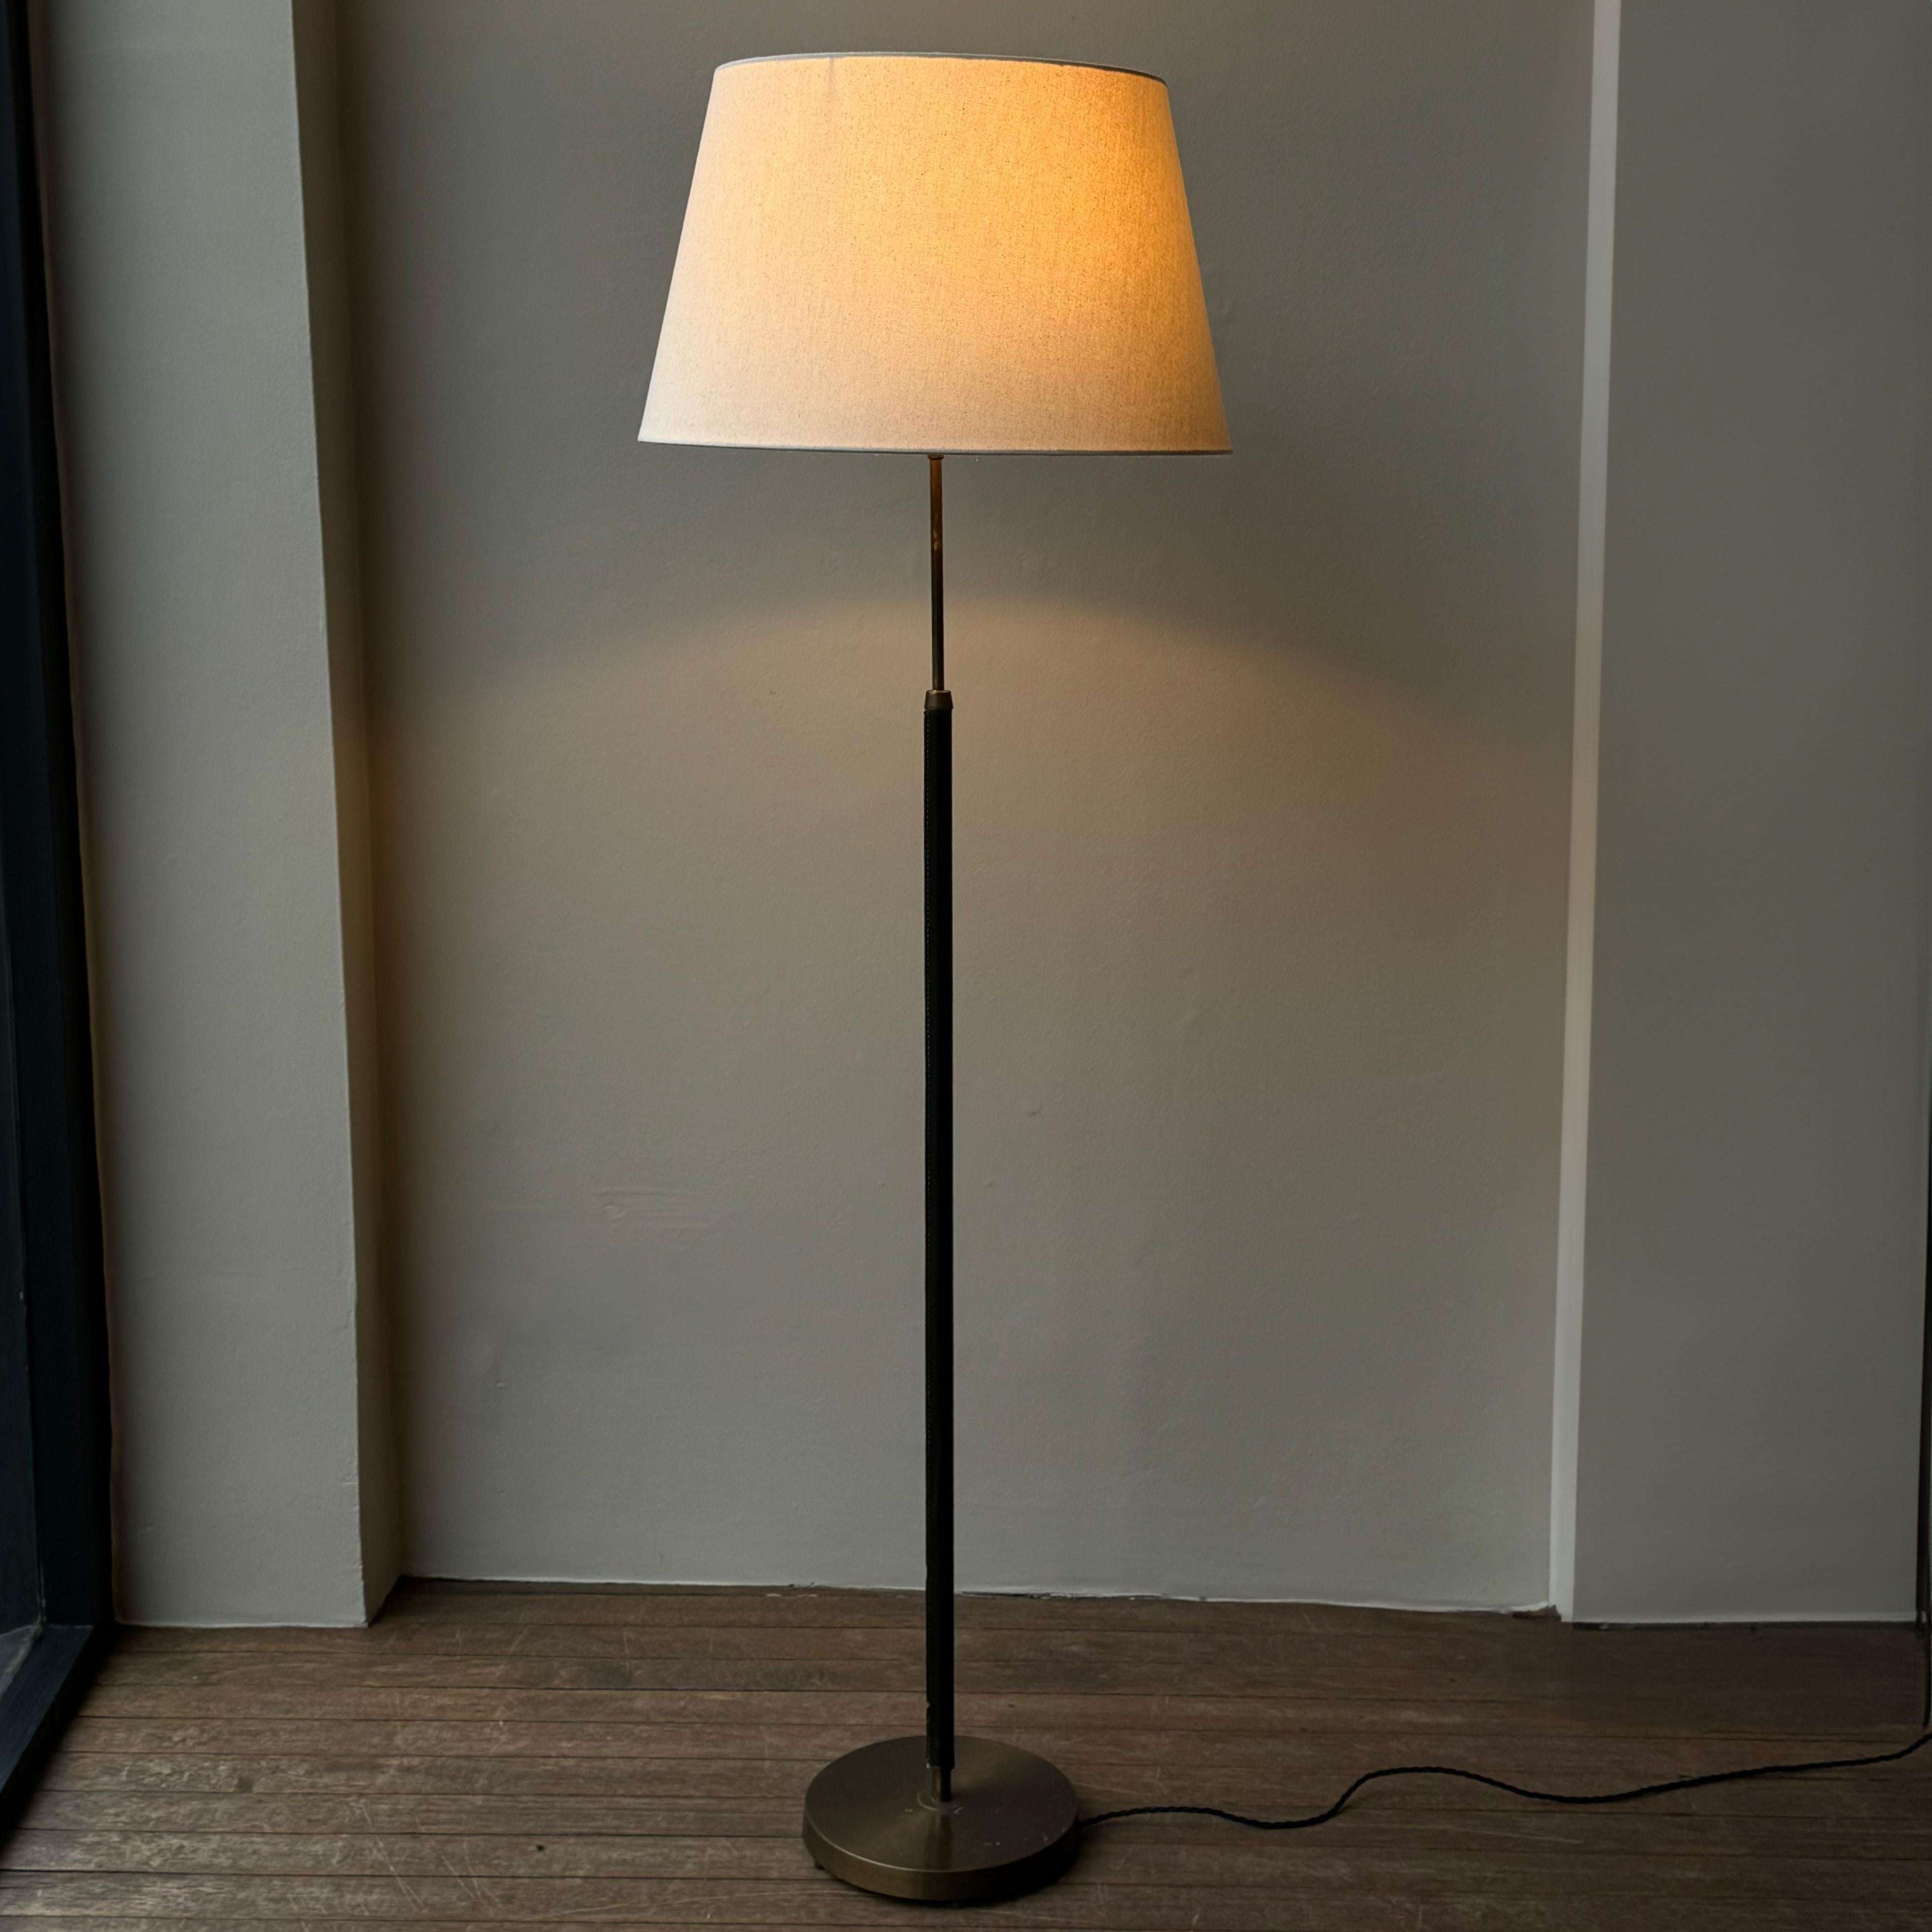 Eine zierliche, ledergebundene Stehlampe aus Messing, hergestellt in Schweden zwischen 1950-1960 von Falkenbergs Belysning. 

Diese schön proportionierte und taktile Stehlampe zeichnet sich durch einen handgenähten, mit Leder umwickelten Schaft und